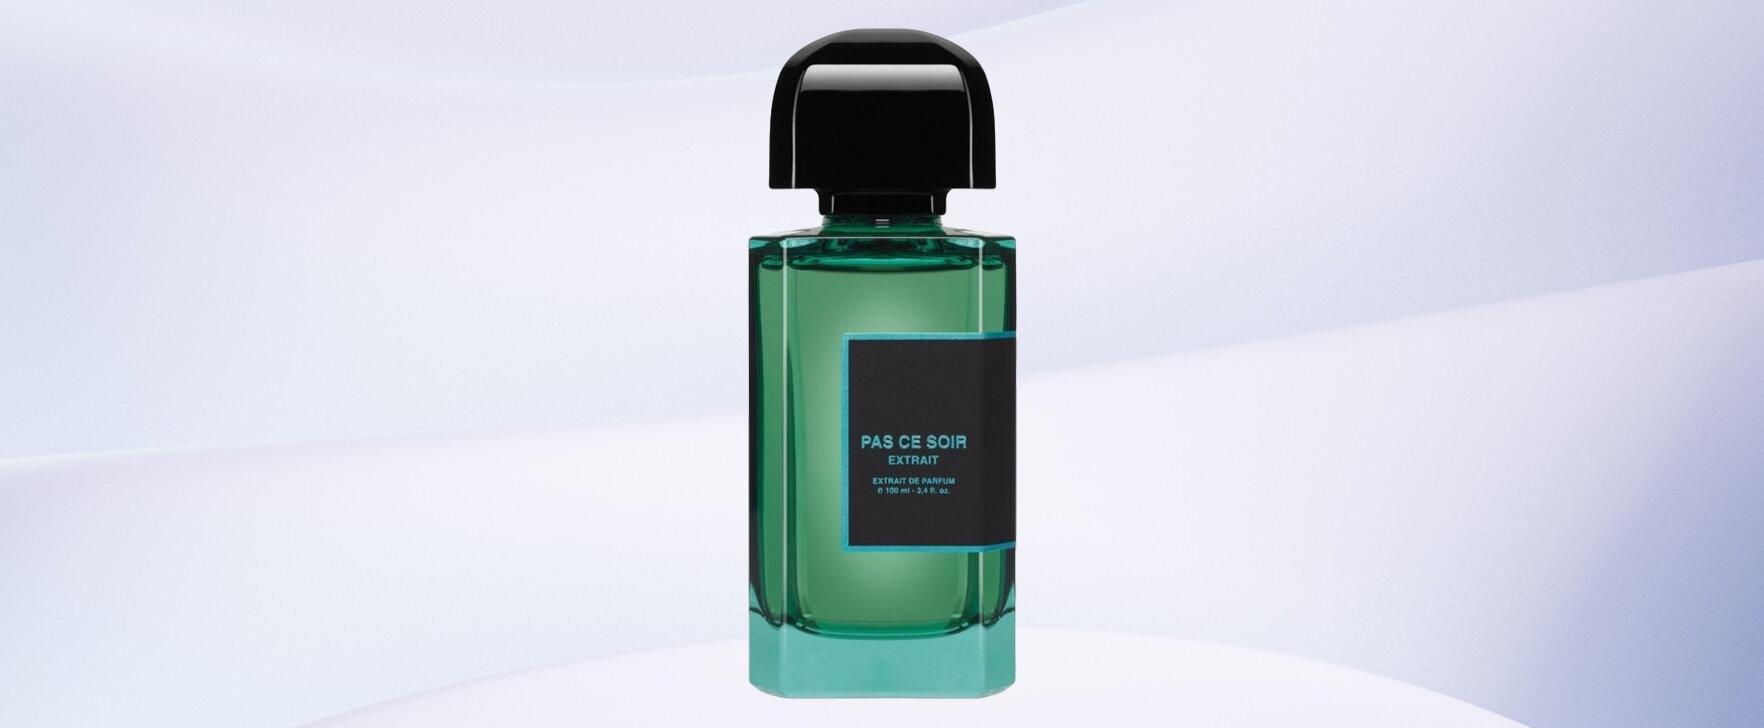 A Sensual Tribute to the Mystique of Paris: Pas Ce Soir (Extrait) by bdk Parfums